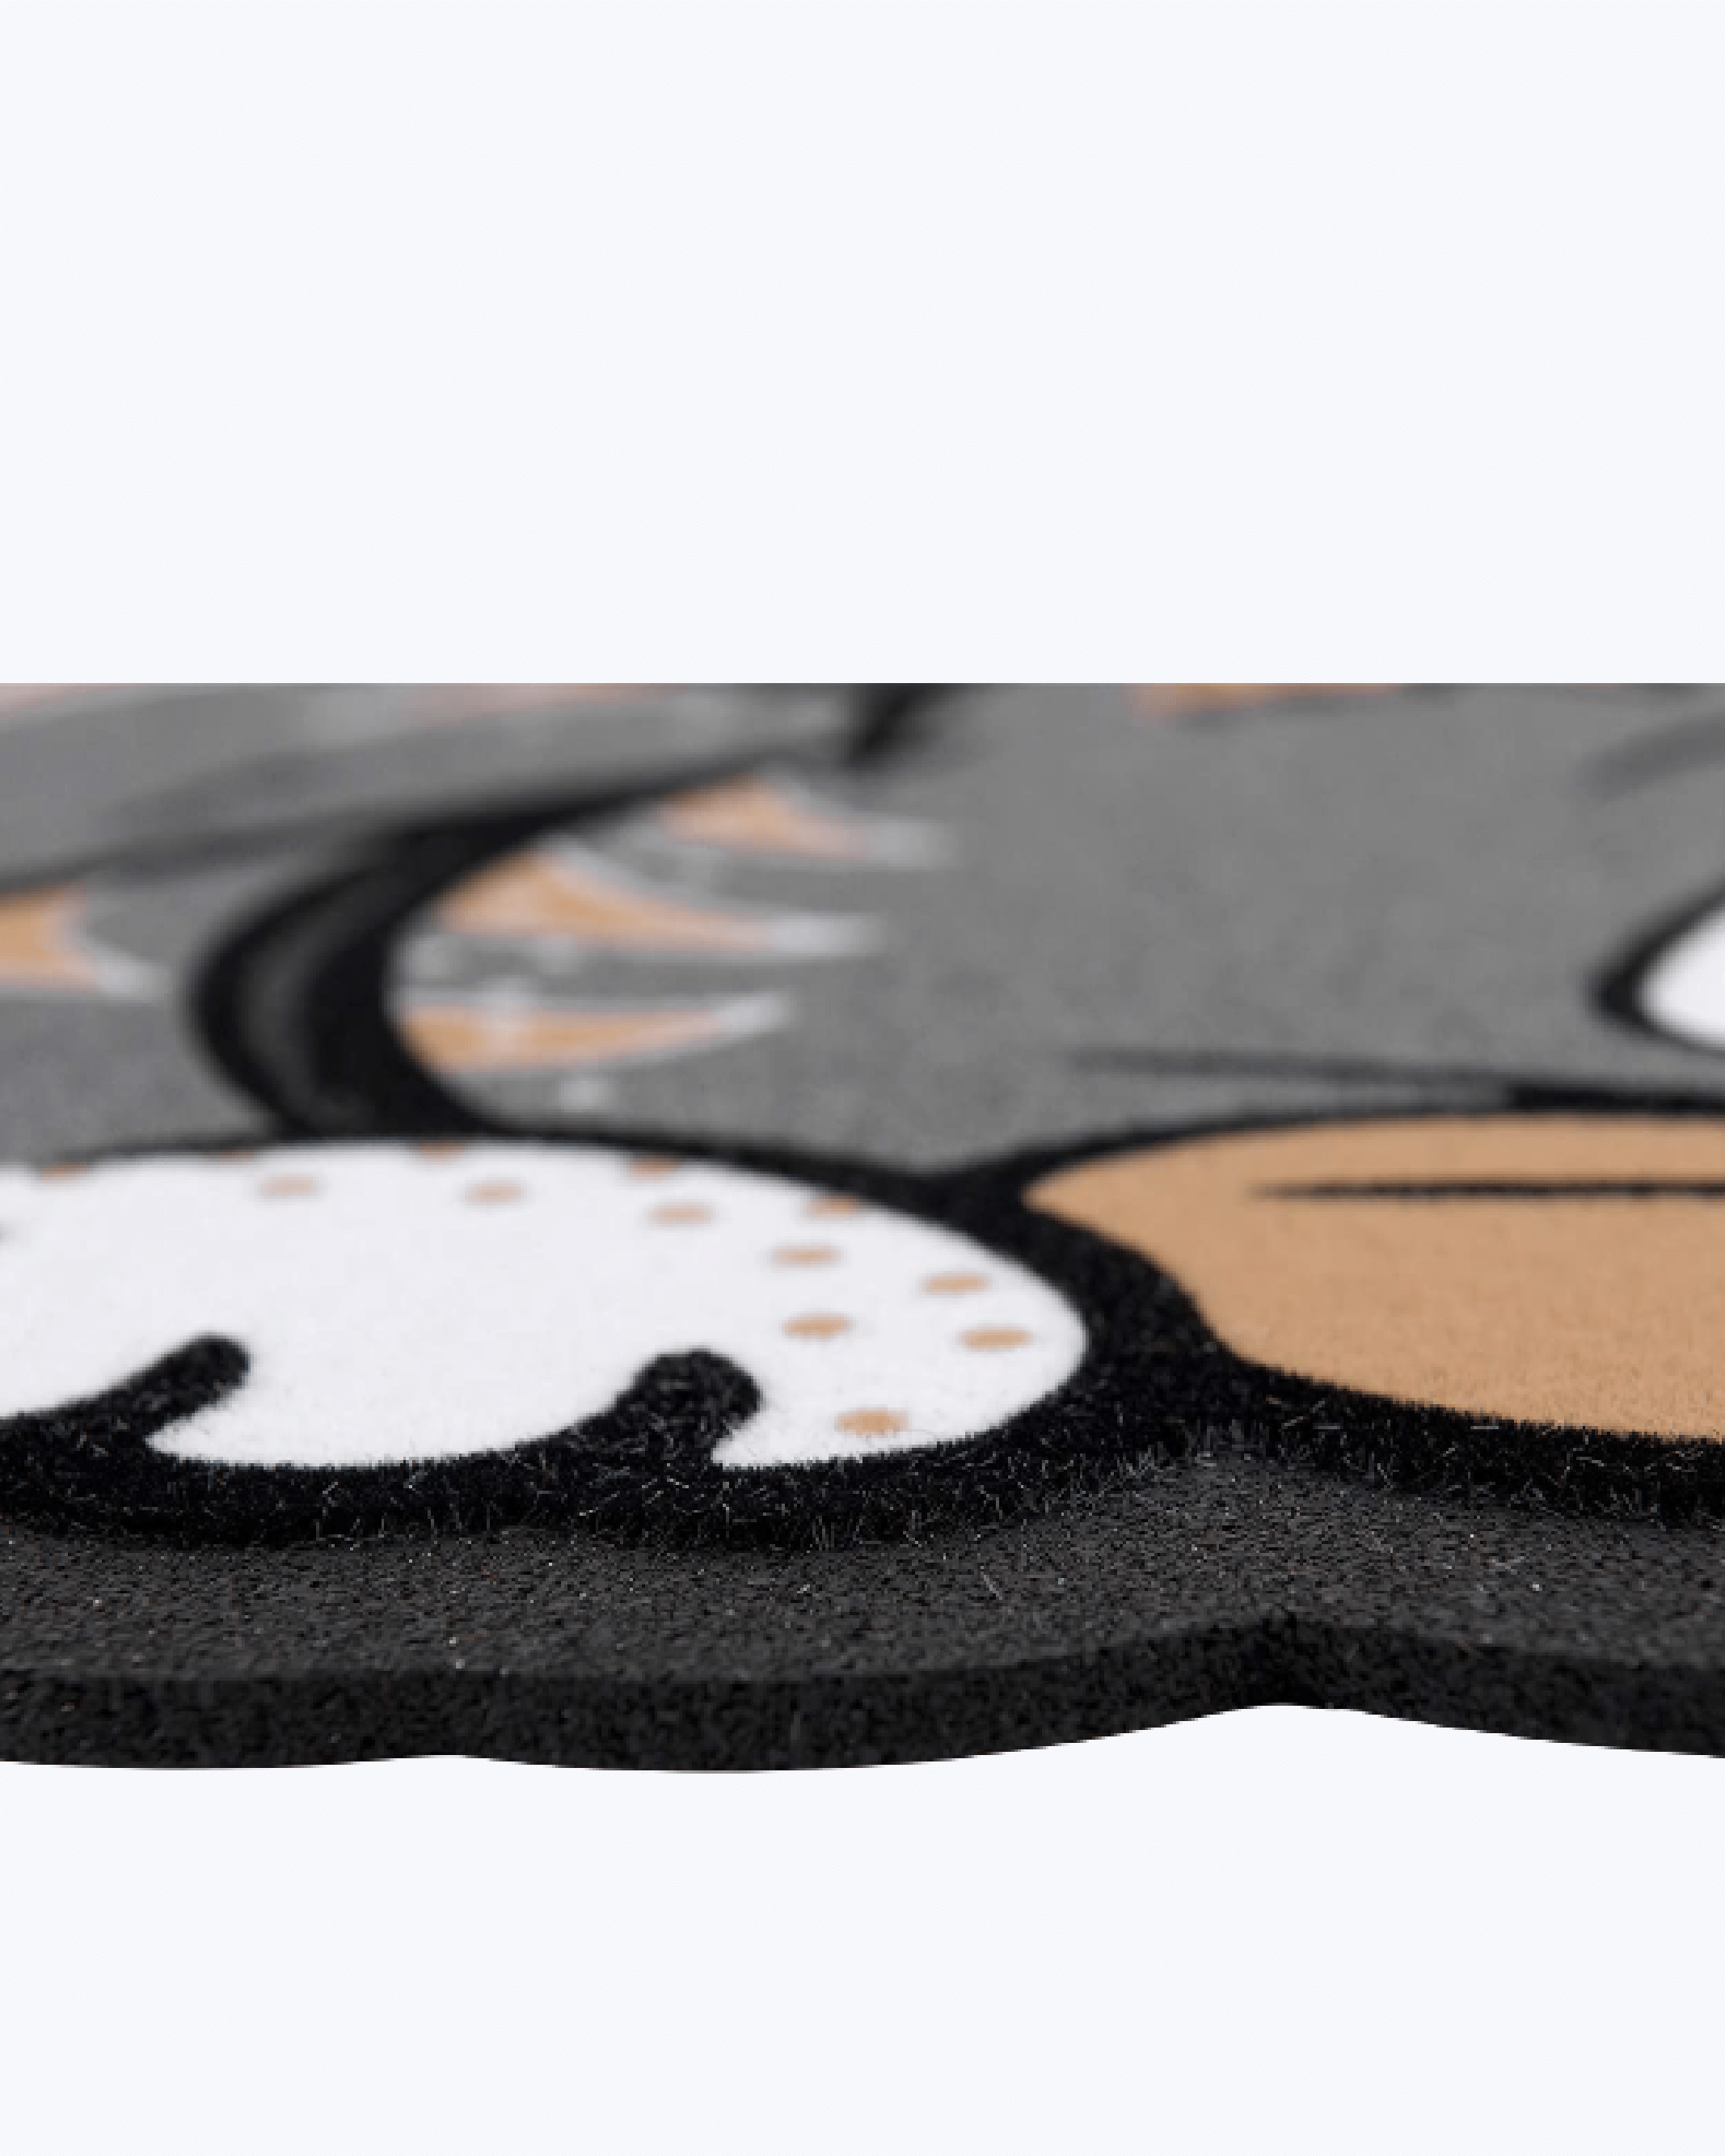 Zerbino tappeto 40x80 cm da esterno in gomma rinforzata antiscivolo